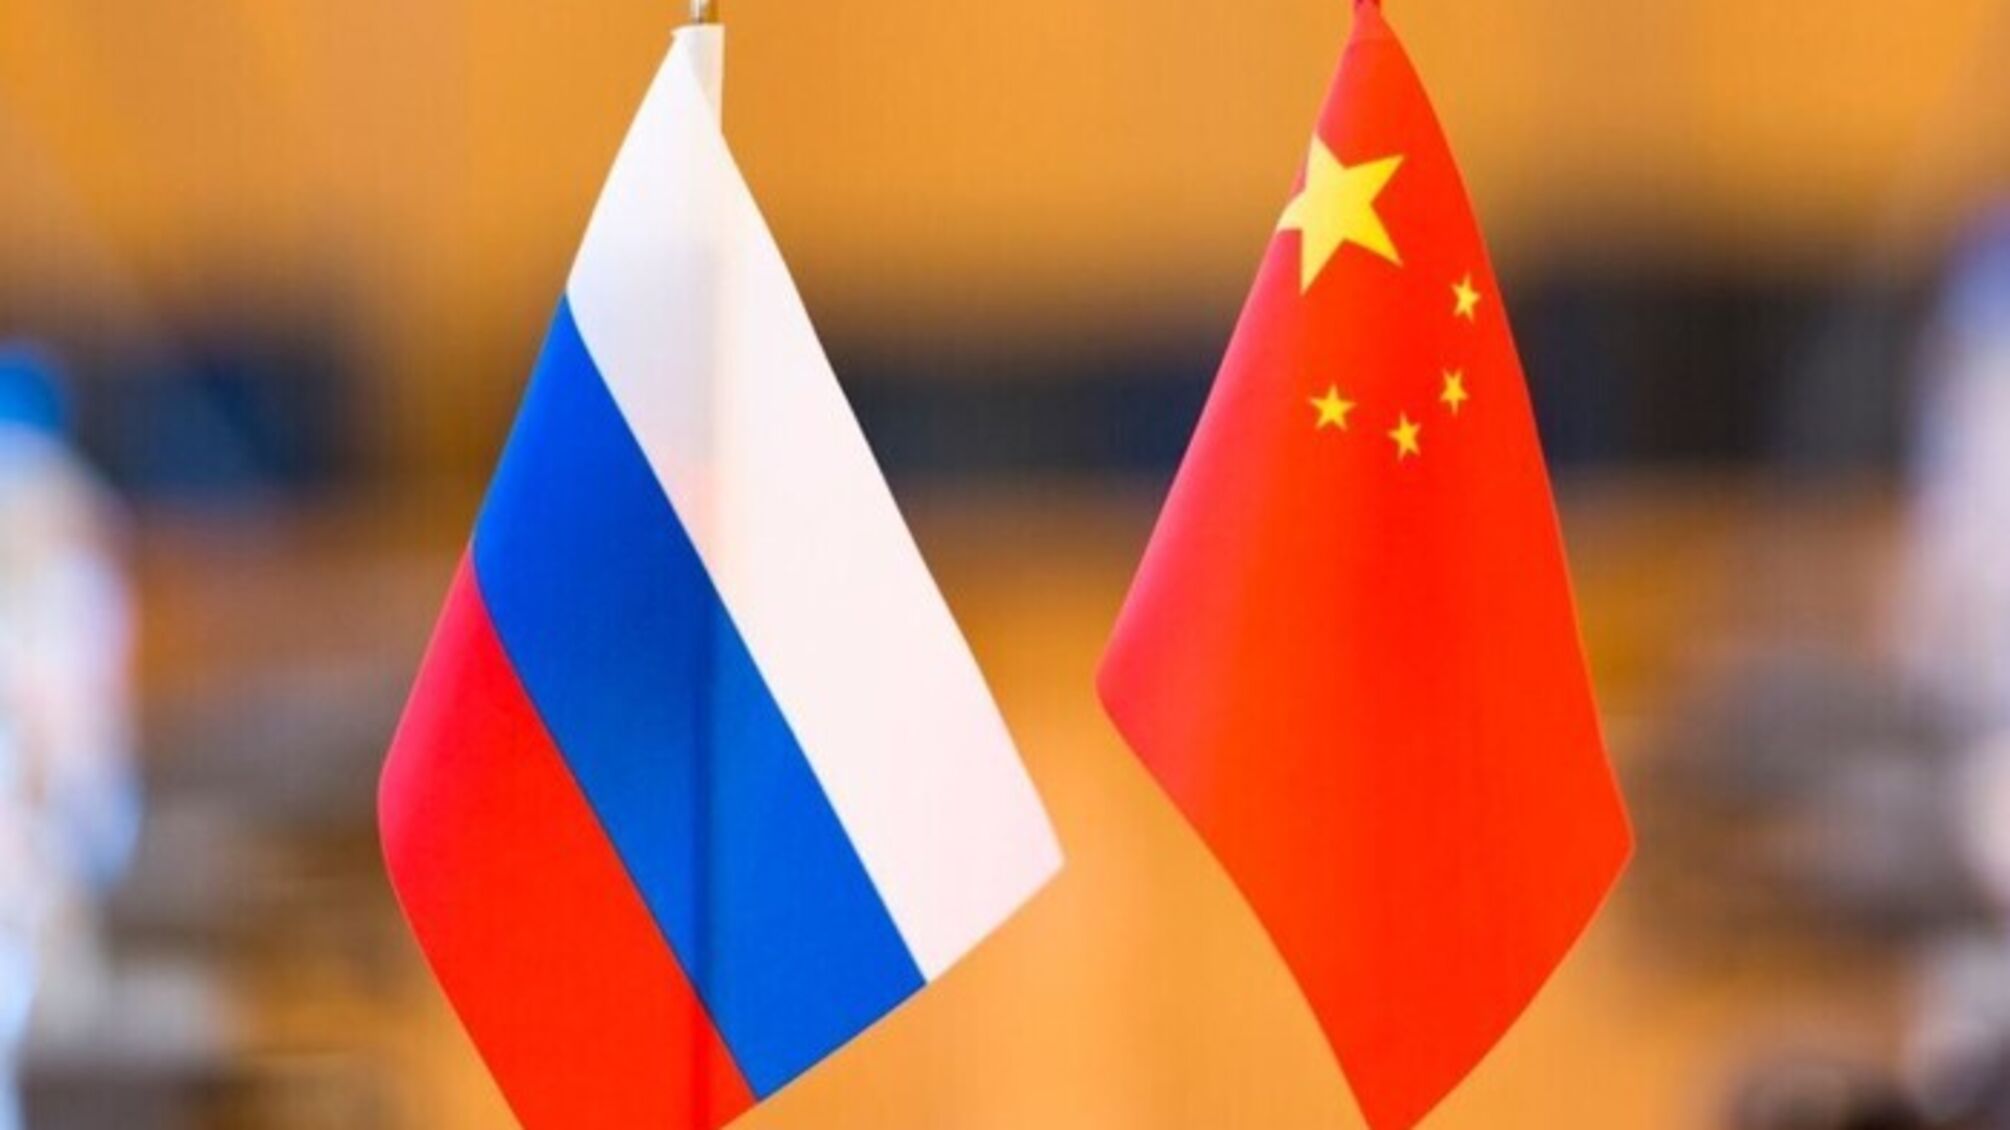 Китай готовится к распаду россии: в Поднебесной распечатали карты, где Сибирь принадлежит им (фото)